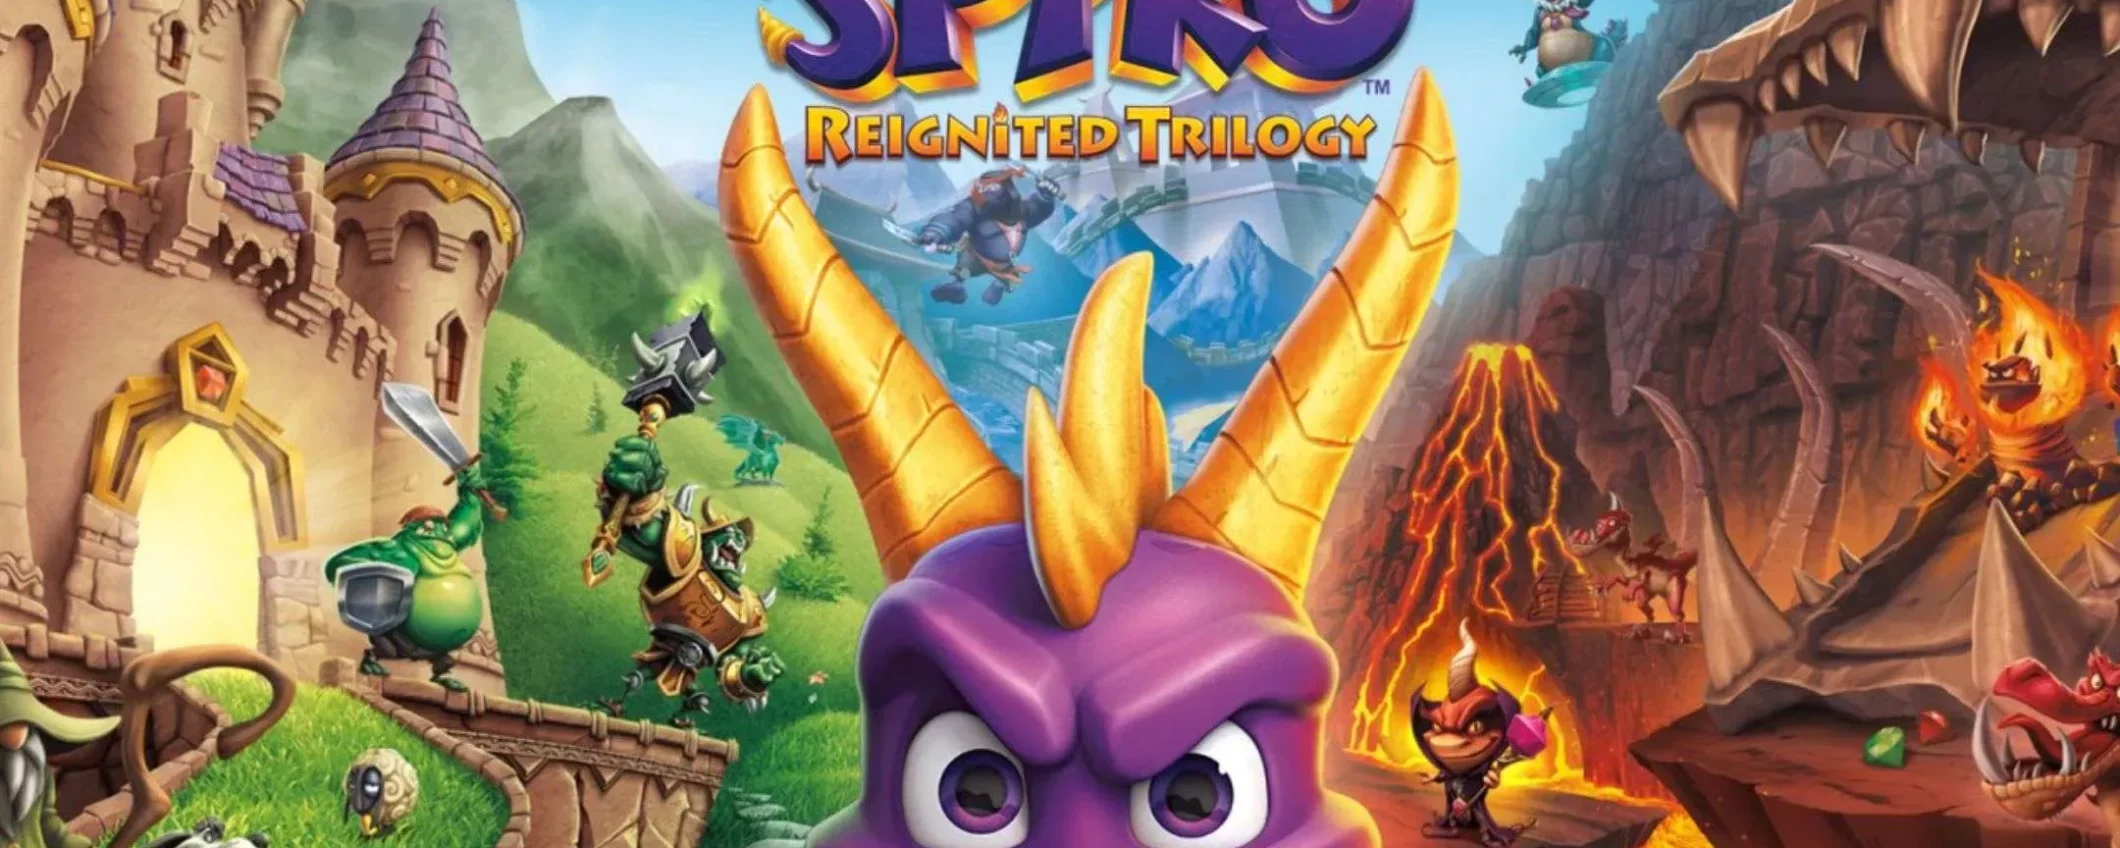 Spyro Reignited Trilogy per Nintendo Switch: bastano meno di 30€ per averlo